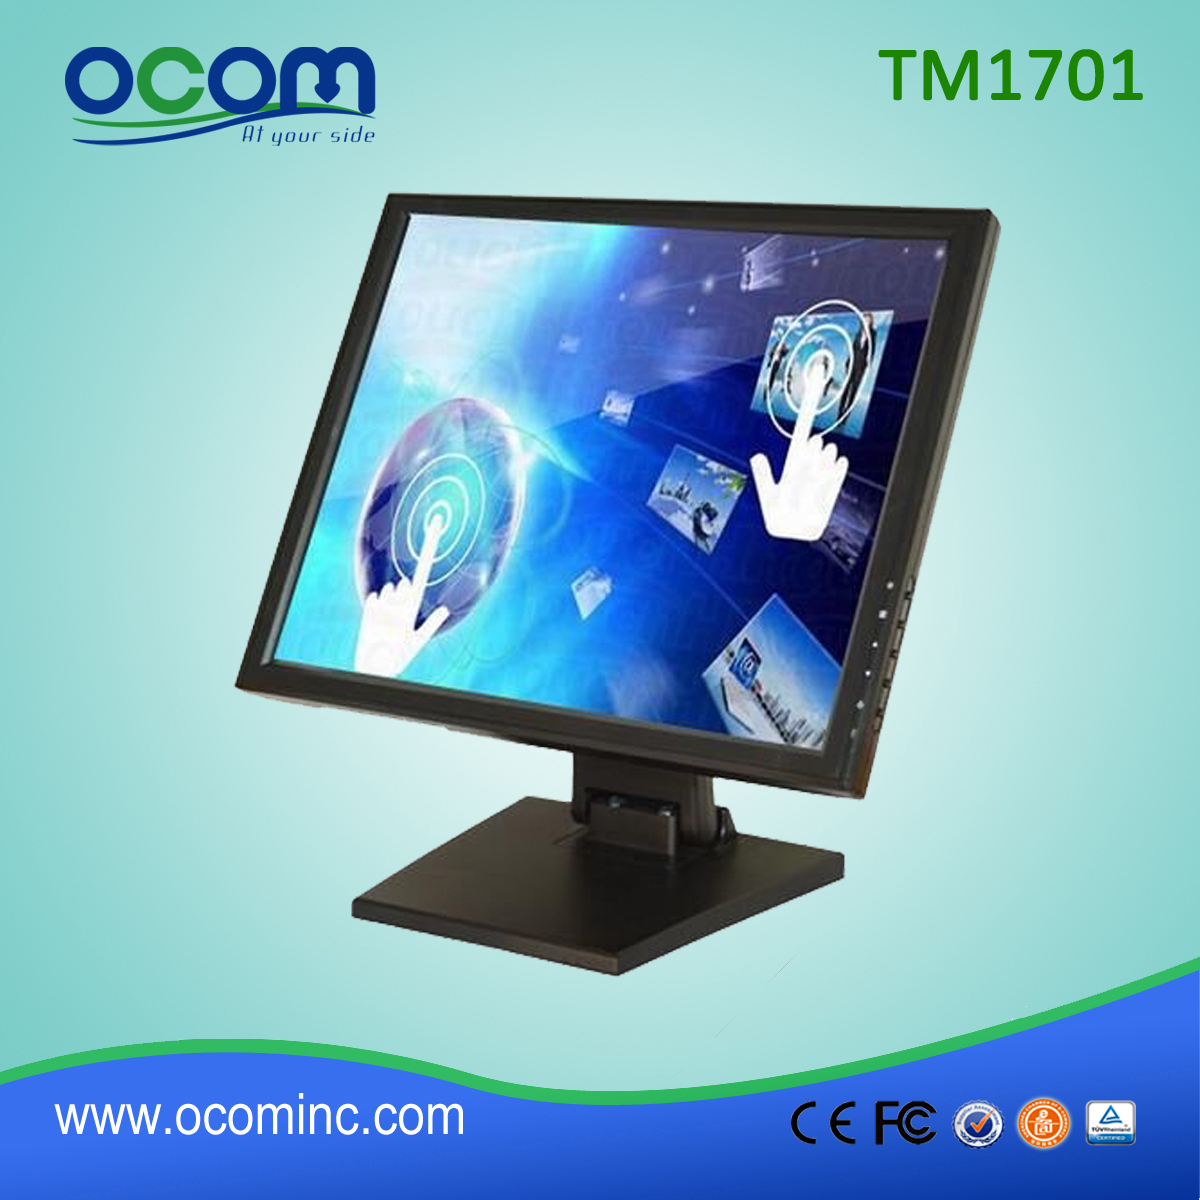 TM1701 17英寸触摸屏液晶显示器POS显示器